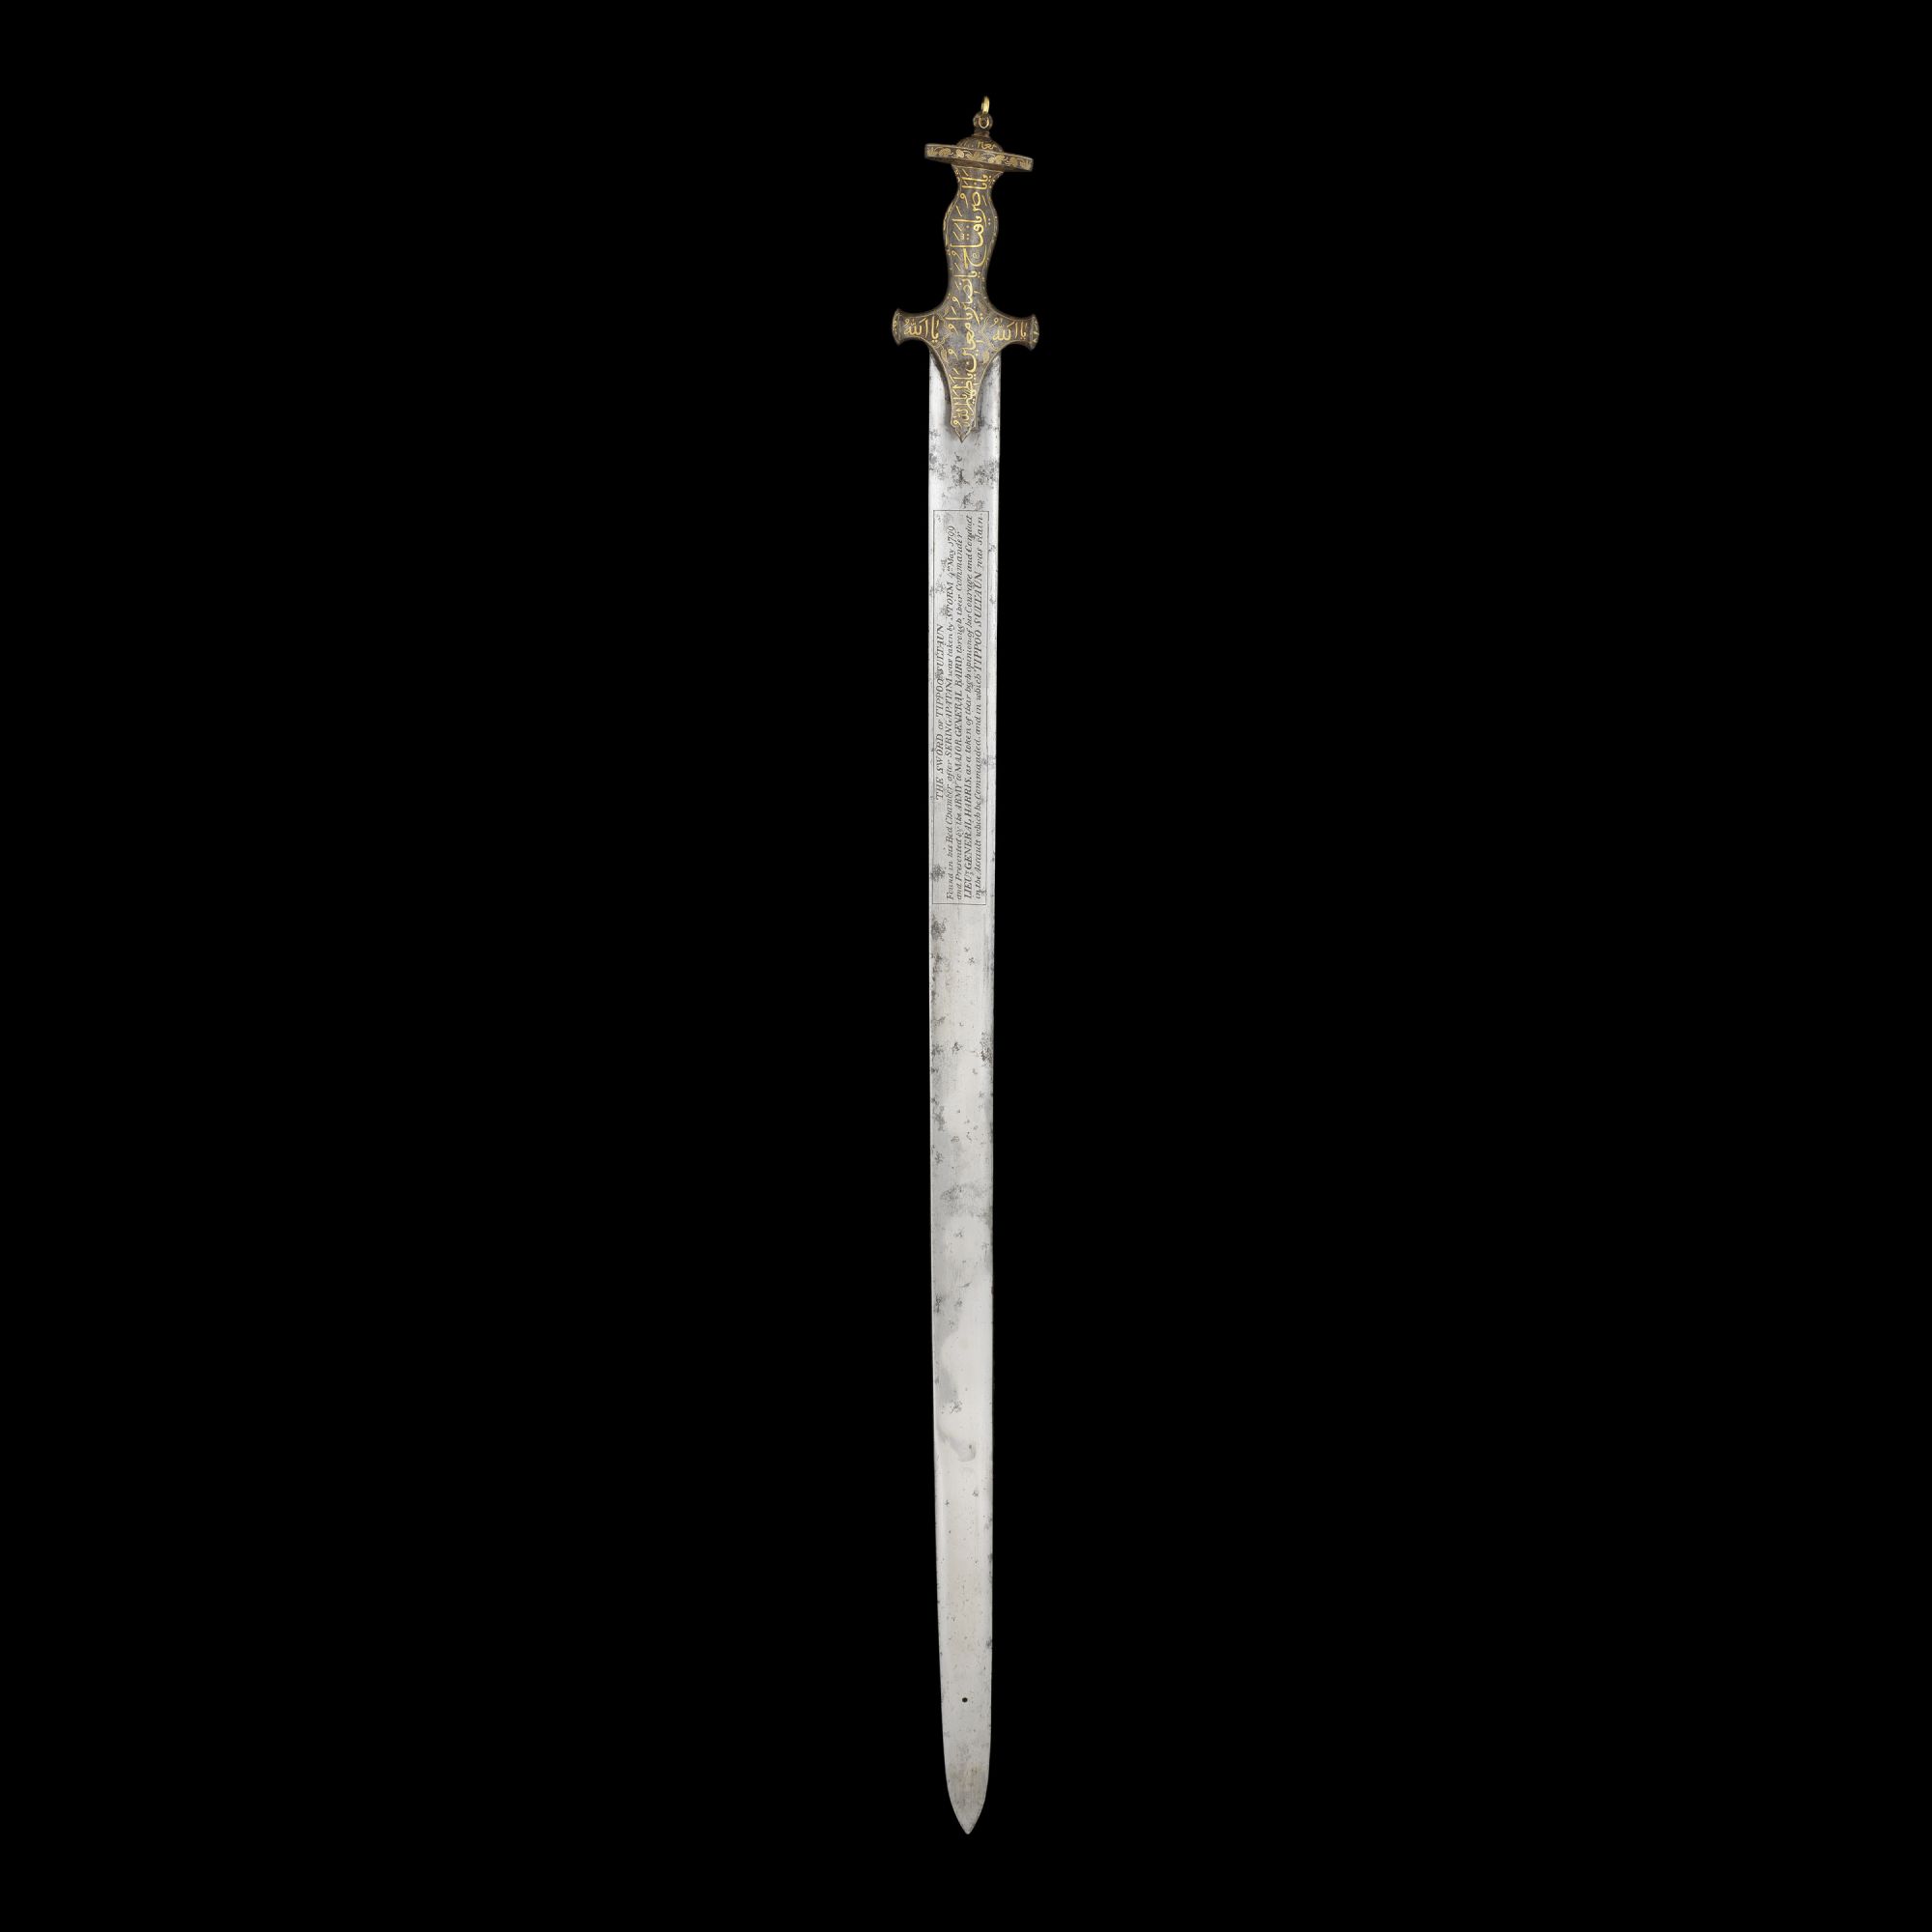 02 Tipu Sultan sword